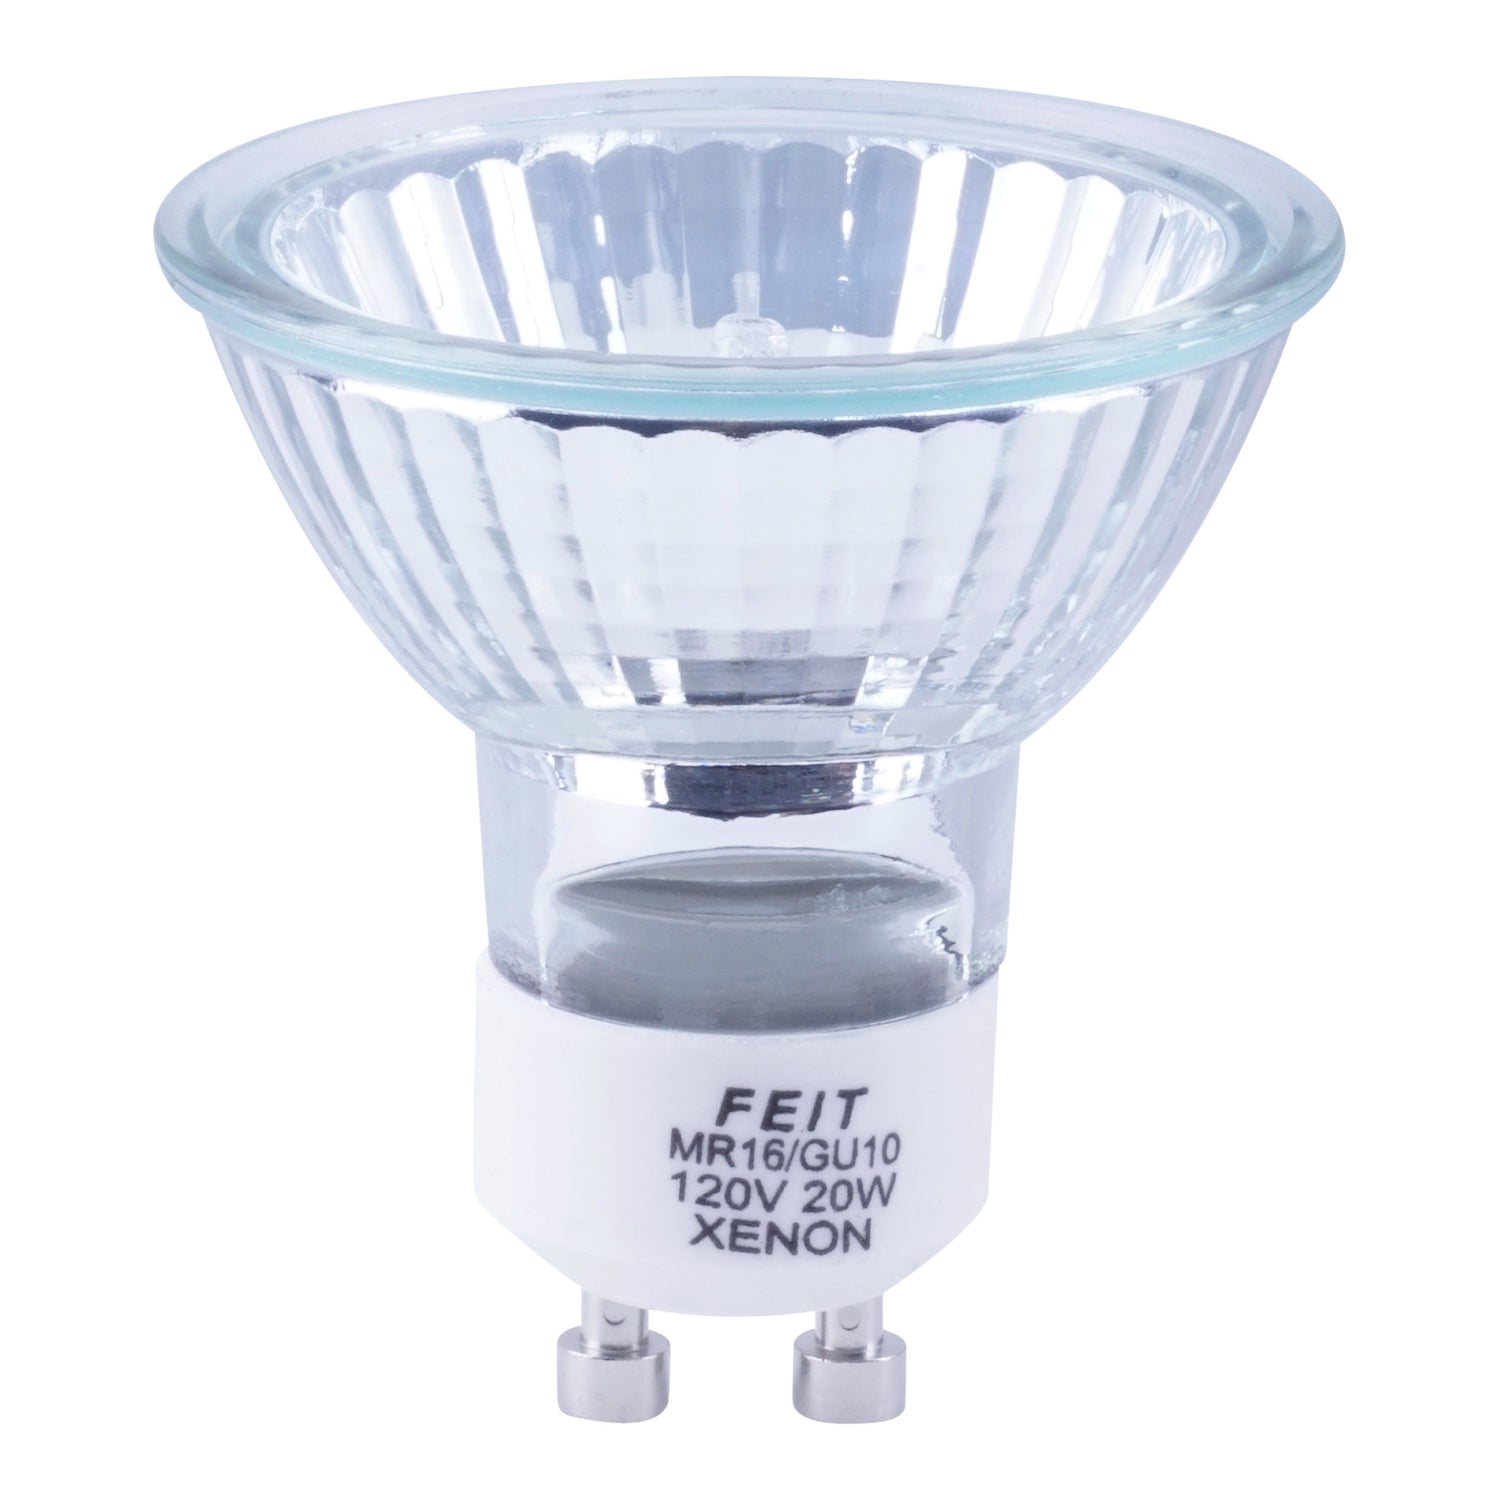 20W Warm White GU10 Base 120V Xenon Light Bulb